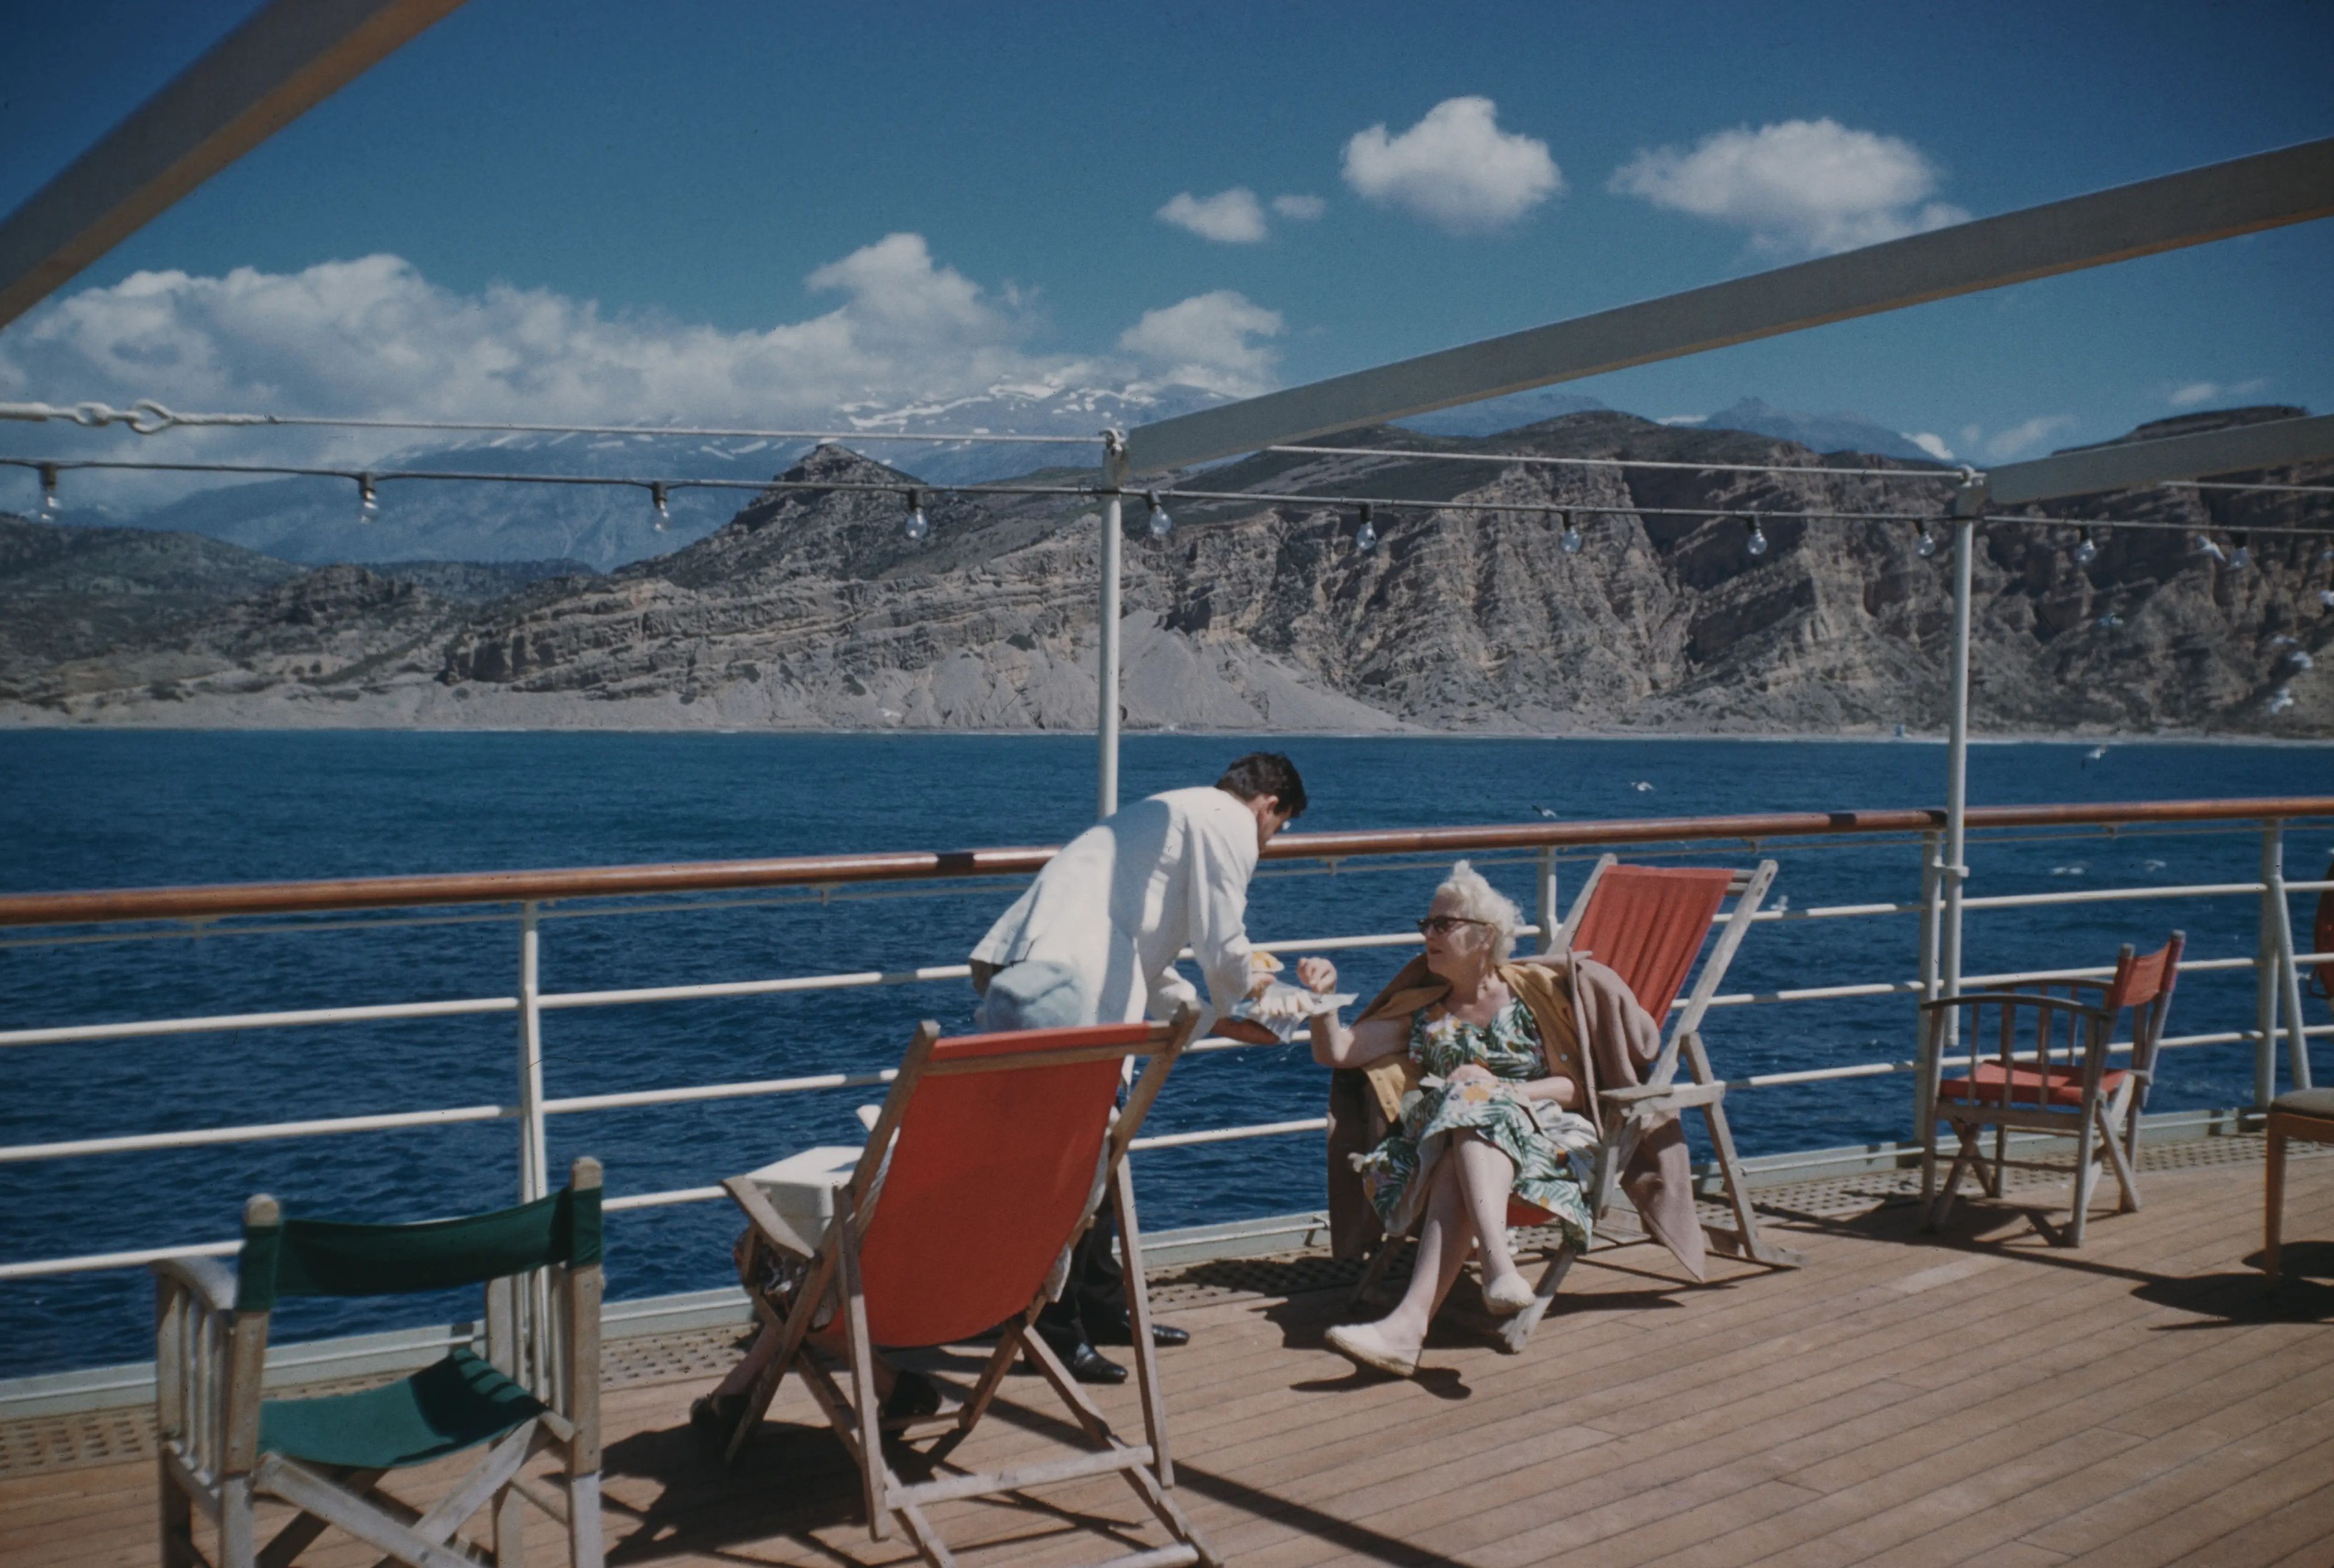 Un tentempié a media mañana en el crucero Agamemnon, anclado frente a Agia Galini, en el sur de Creta, Grecia, 12 de abril de 1959.